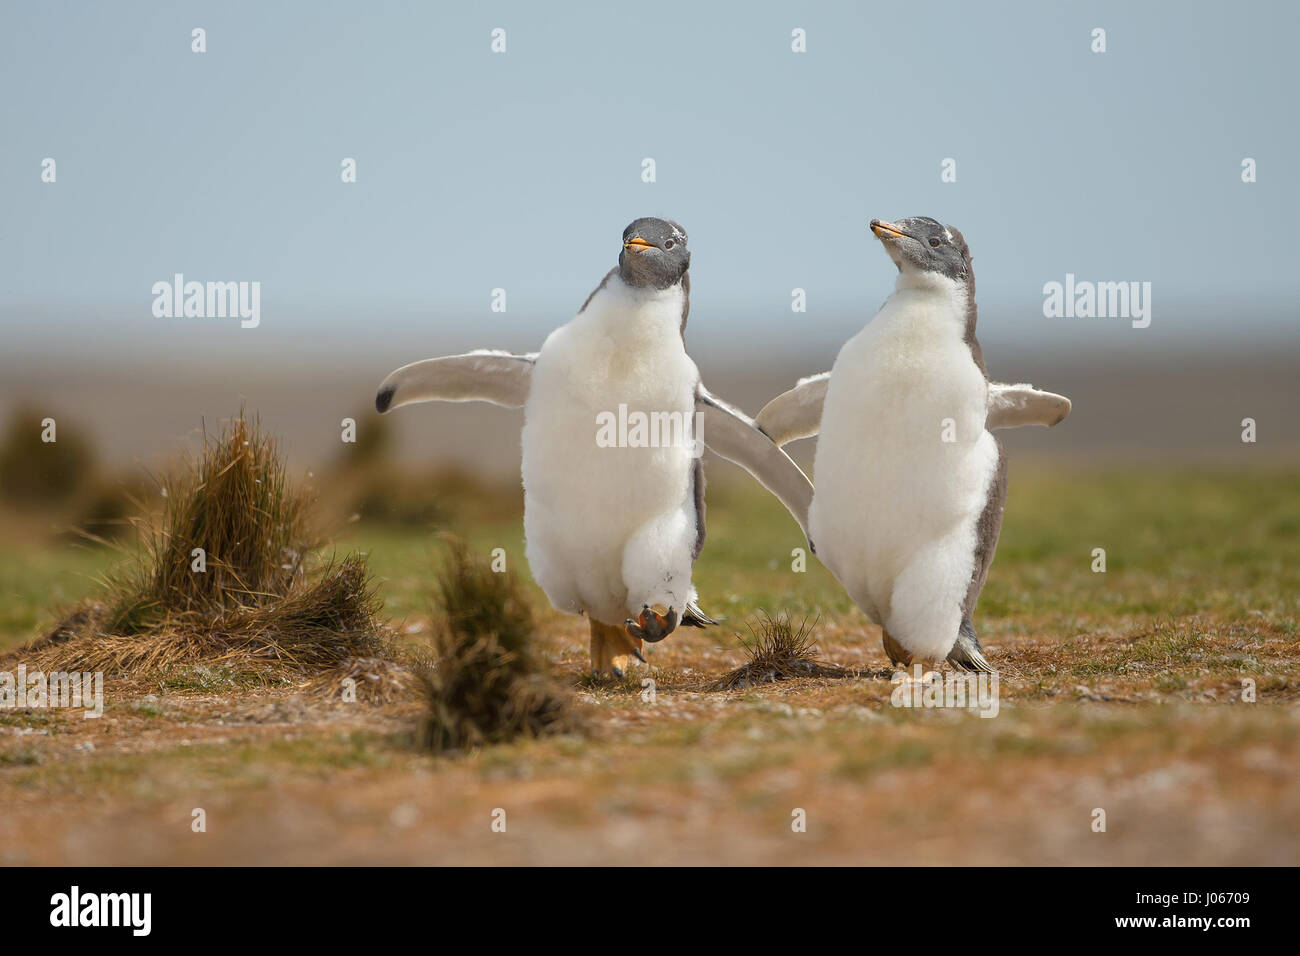 Isole Falkland, Sud Atlantico: giocoso pinguino pulcini che vivono sul territorio britannico sono stati innestati godendo di una macchia di Gentoo divertente. Questo troppo carino trio di pinguini Gentoo può essere visto sculettando il loro modo torna alla mamma. Il primo pinguino pulcino per raggiungere la sua ottenuto di avere il suo pick-pick-pick di grub. Mostra gli scatti eventuale vincitore del pulcino-chase ottenendo un buon punto di partenza per i suoi fratelli e in definitiva essere ricompensati dal suo genitore, lasciando gli altri a mangiare solo la sua polvere. Per fortuna una volta ripristinata la mamma di disciplina con un rap di poppa alla testa con il suo becco, non vi era alcun sentimenti difficili tra di si Foto Stock